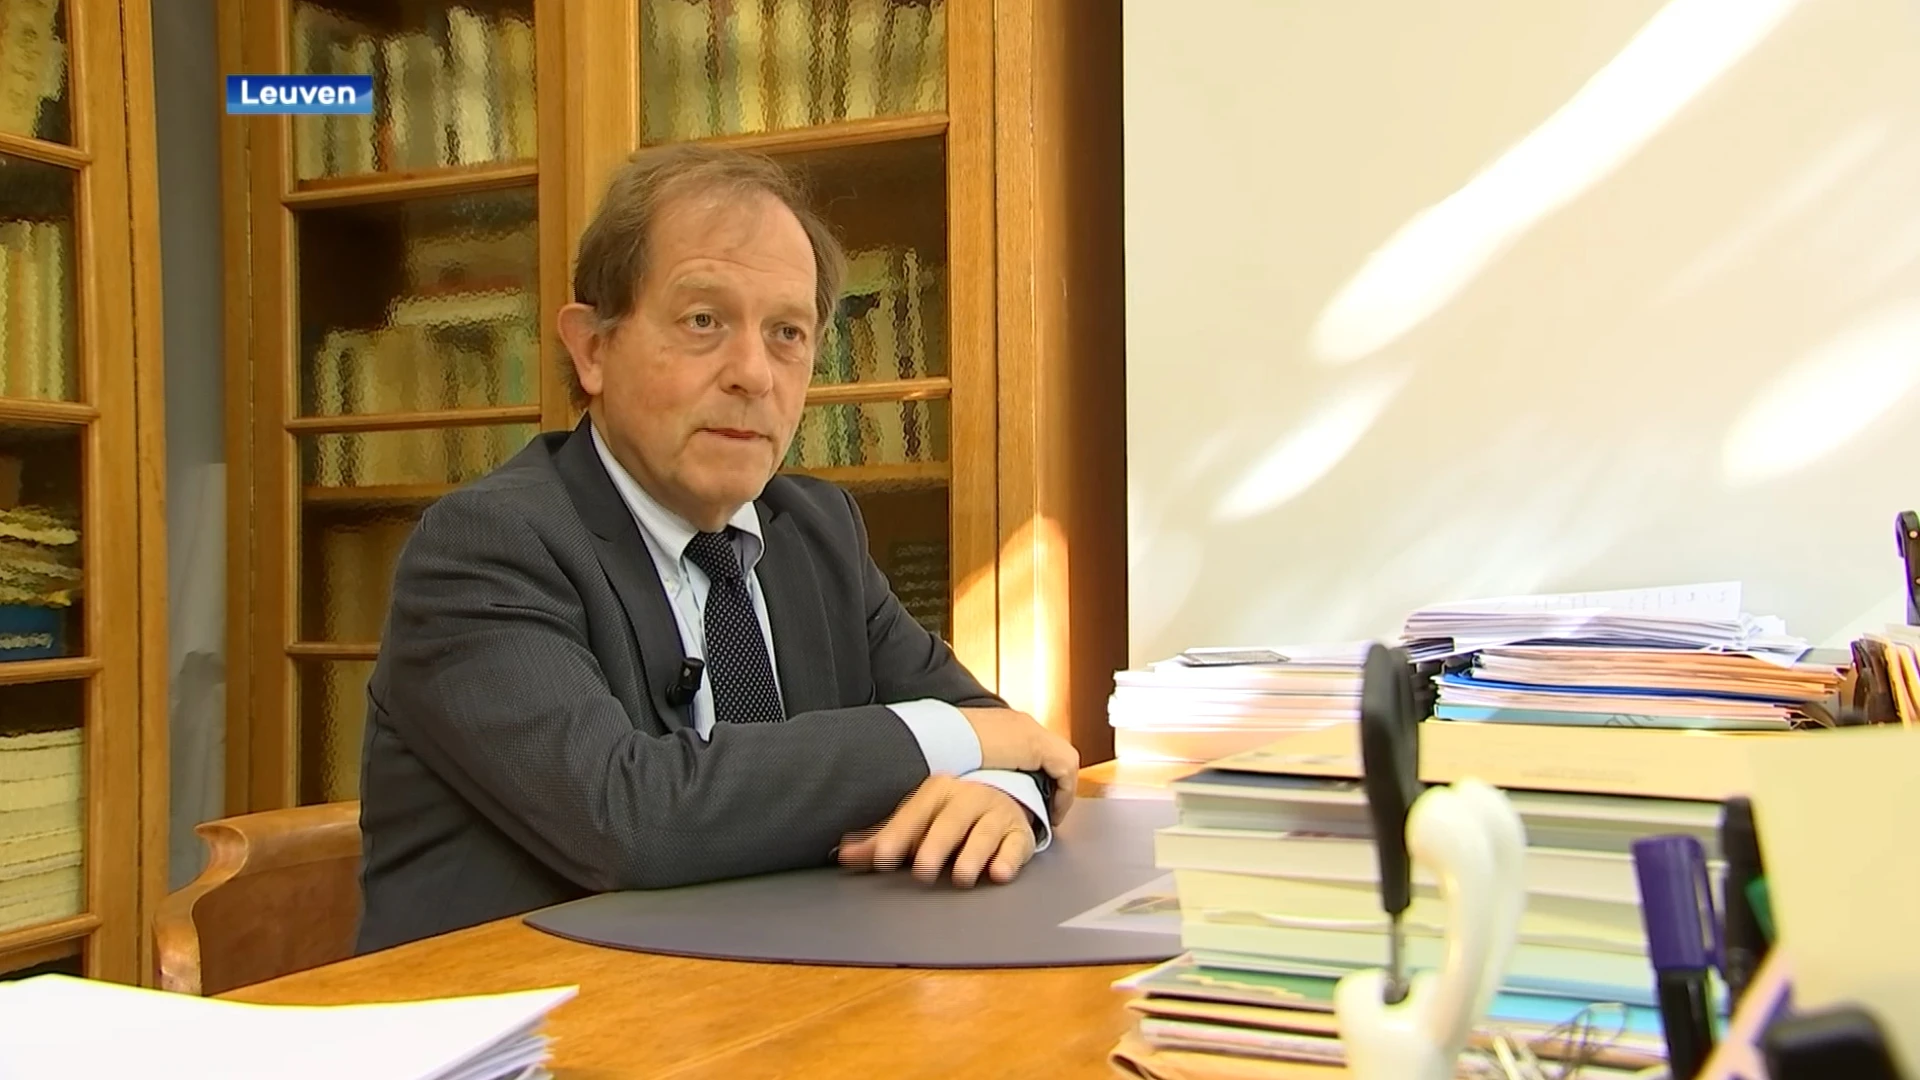 Oud-rector Rik Torfs gaat met pensioen: we blikken terug op zijn loopbaan aan de KU Leuven